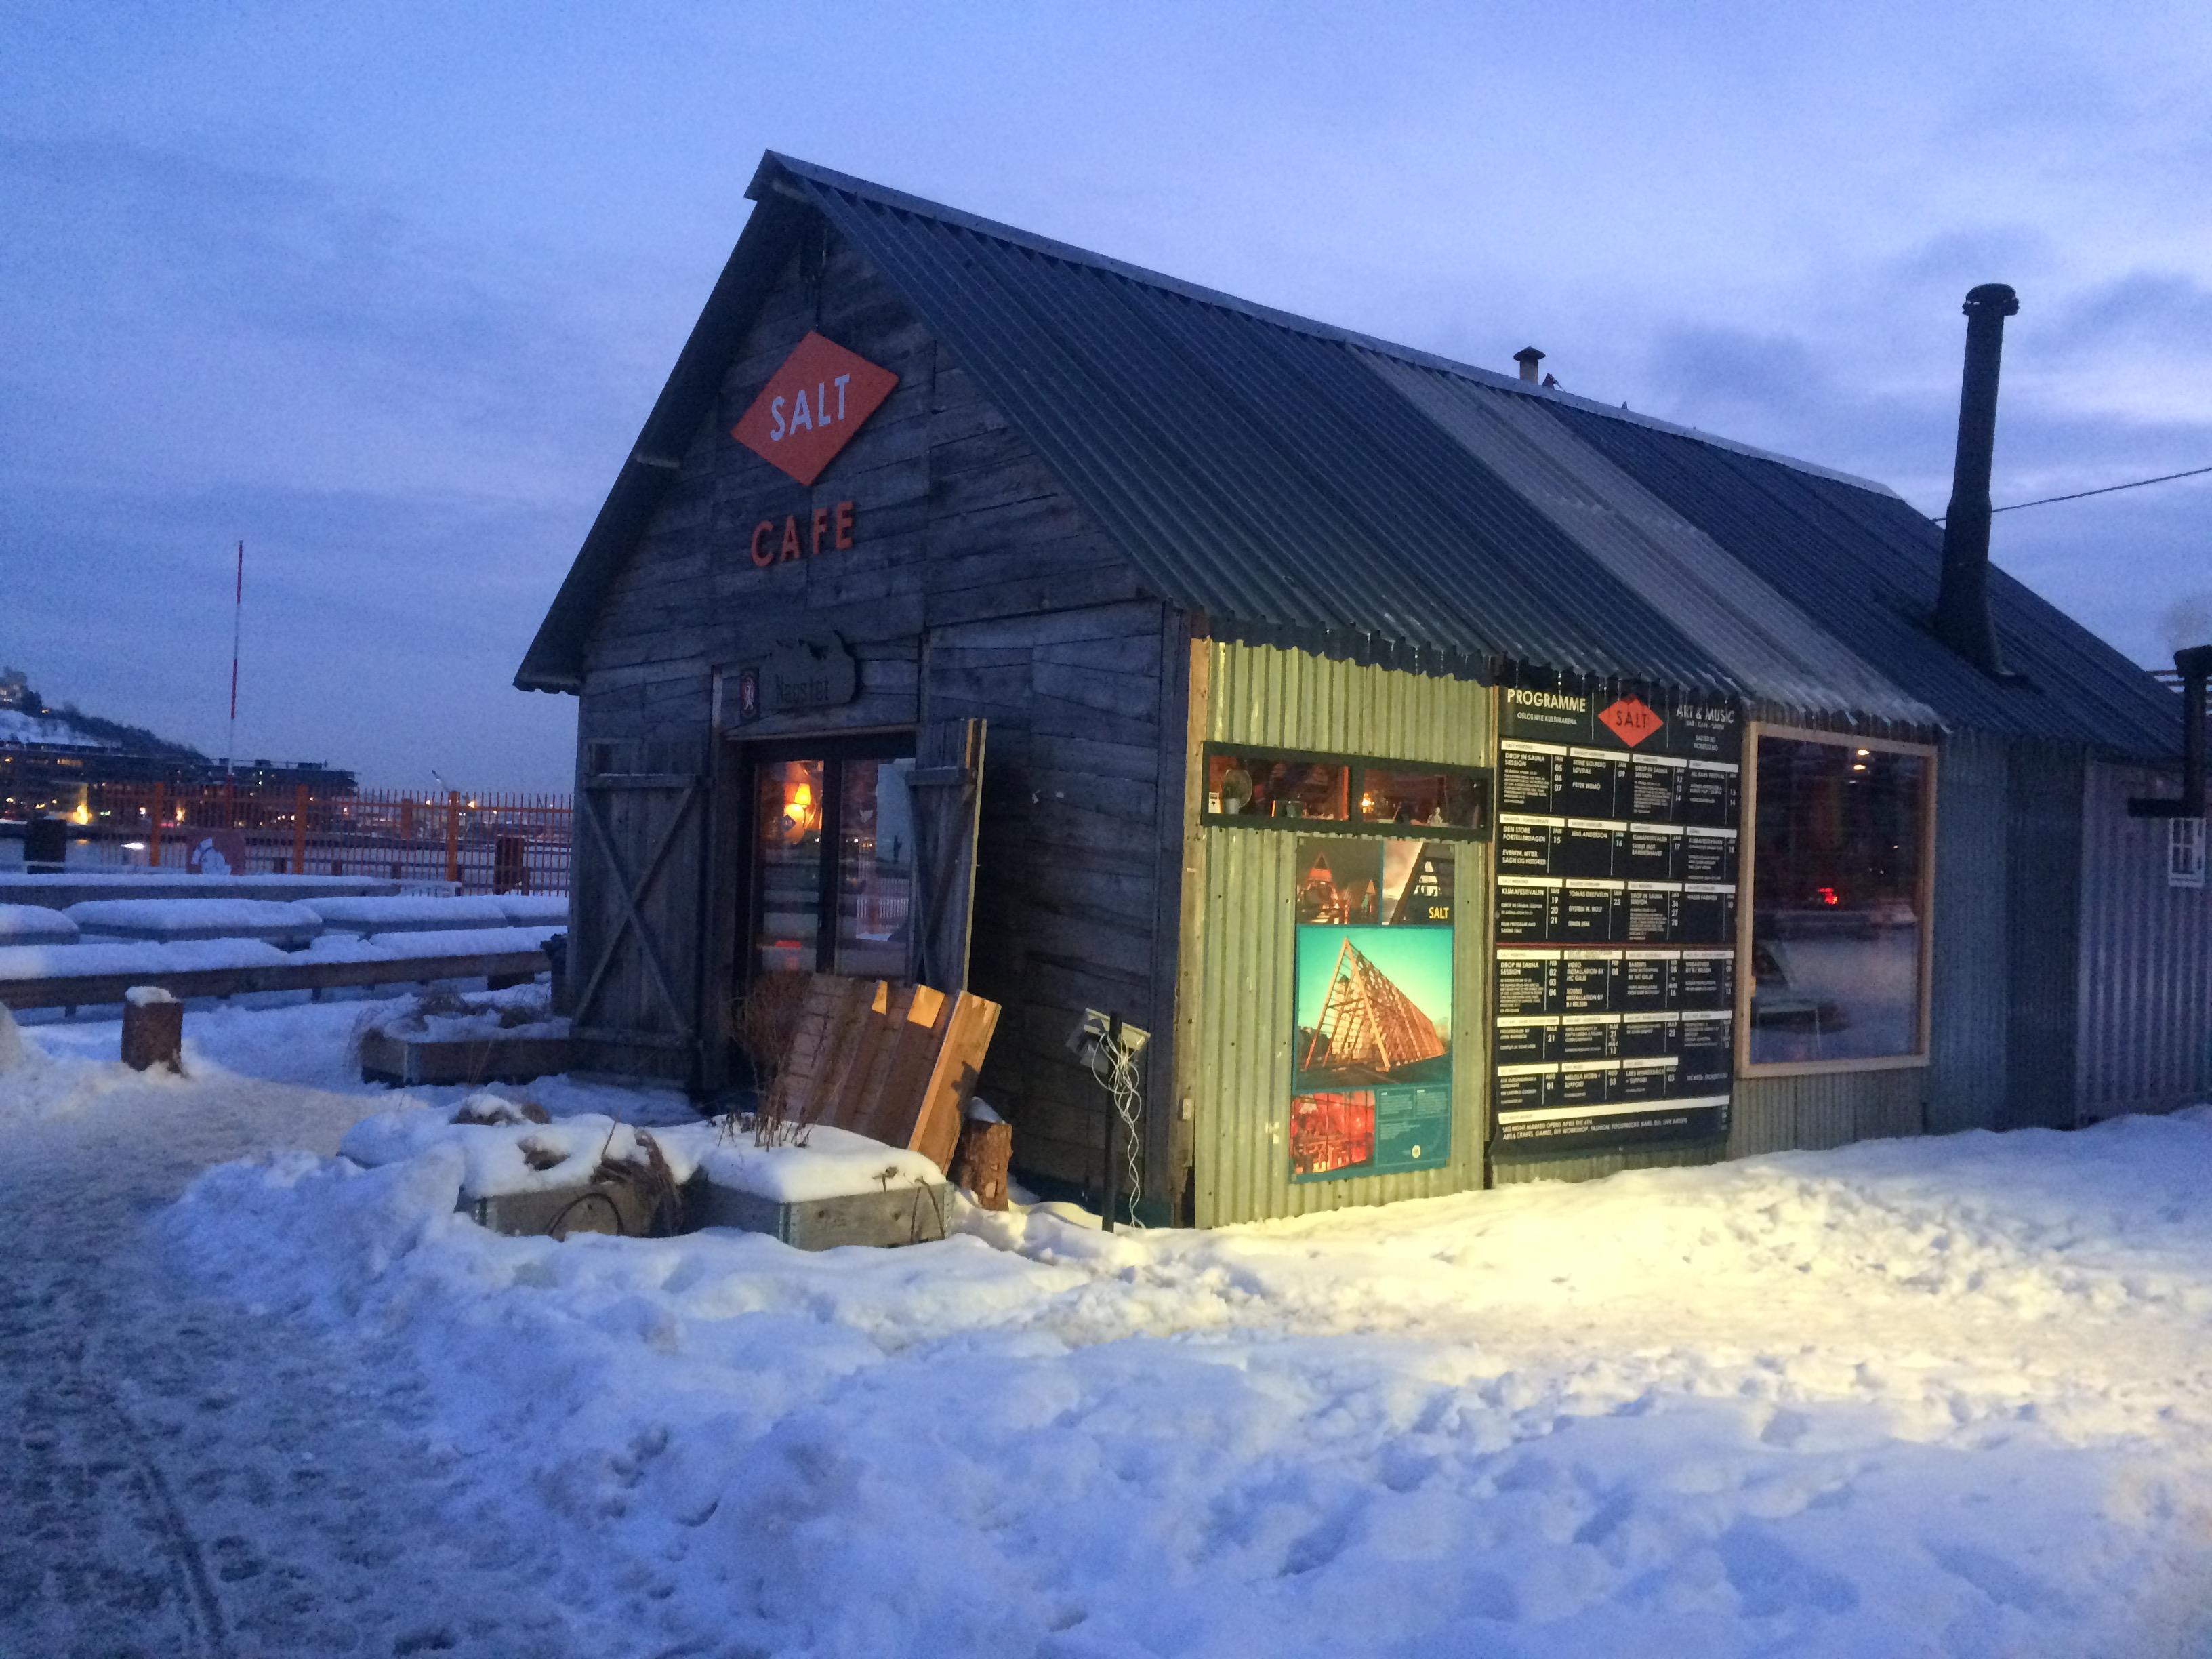 Le café du centre culture Salt à Oslo. [RTS - Blandine Levite]